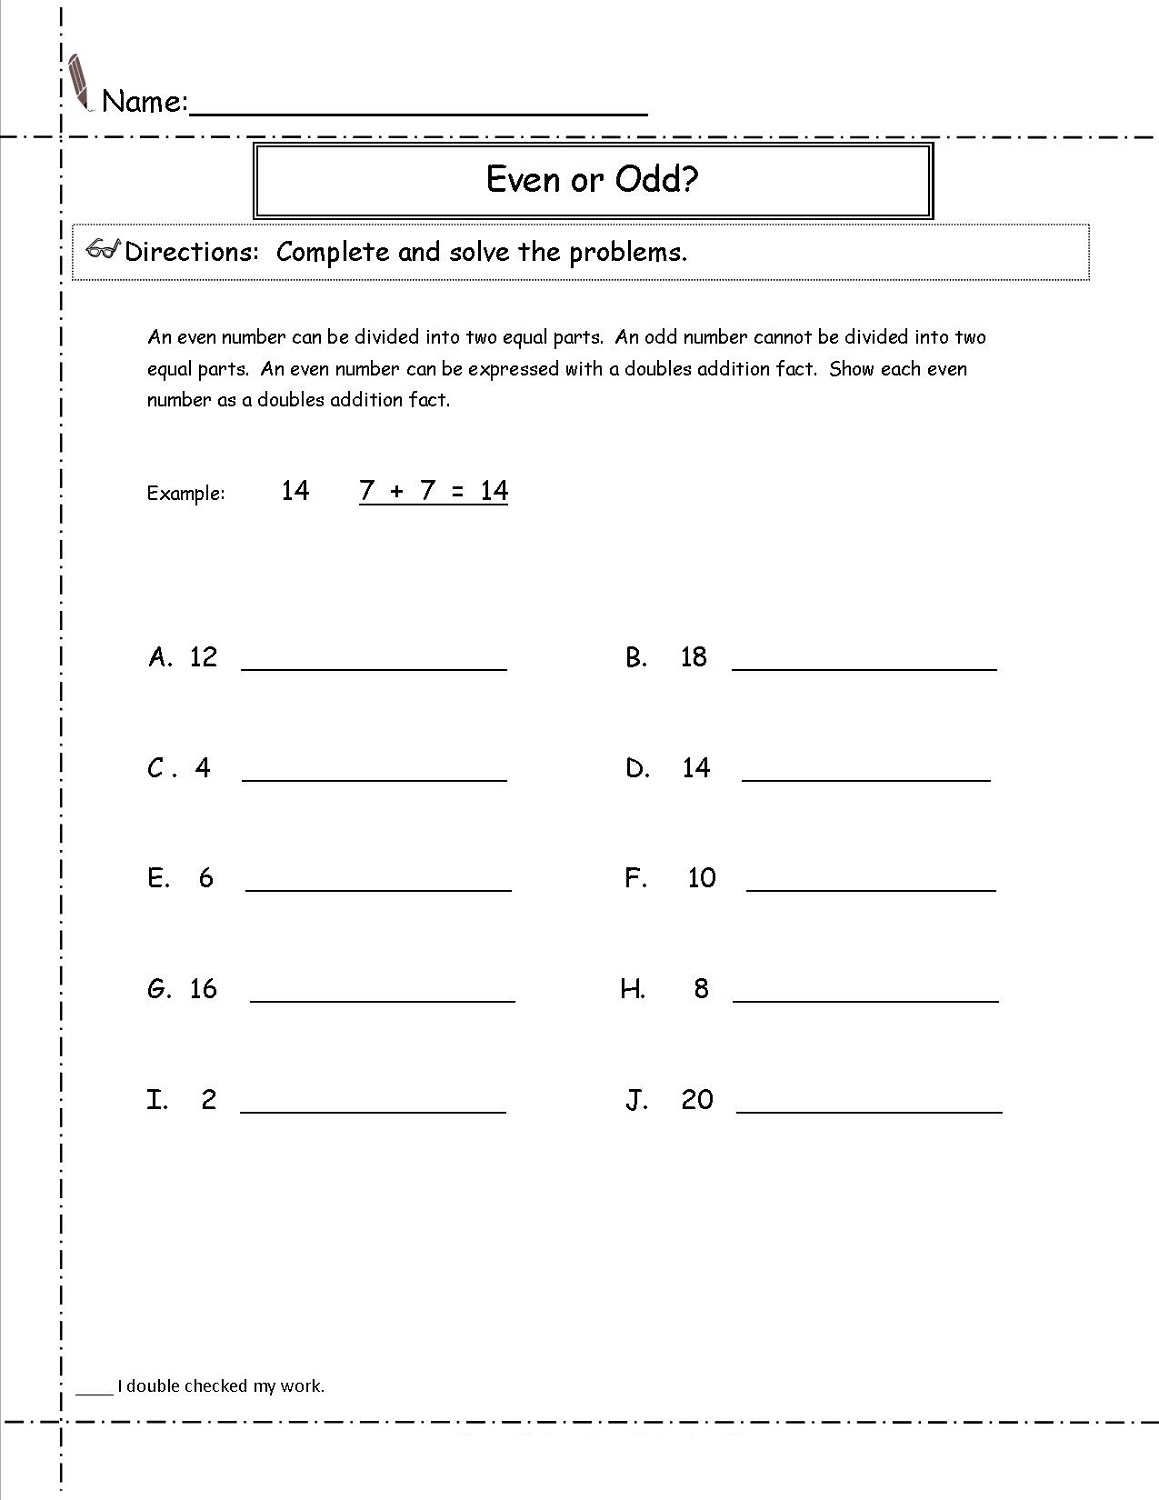 odd-or-even-worksheet-2nd-grade